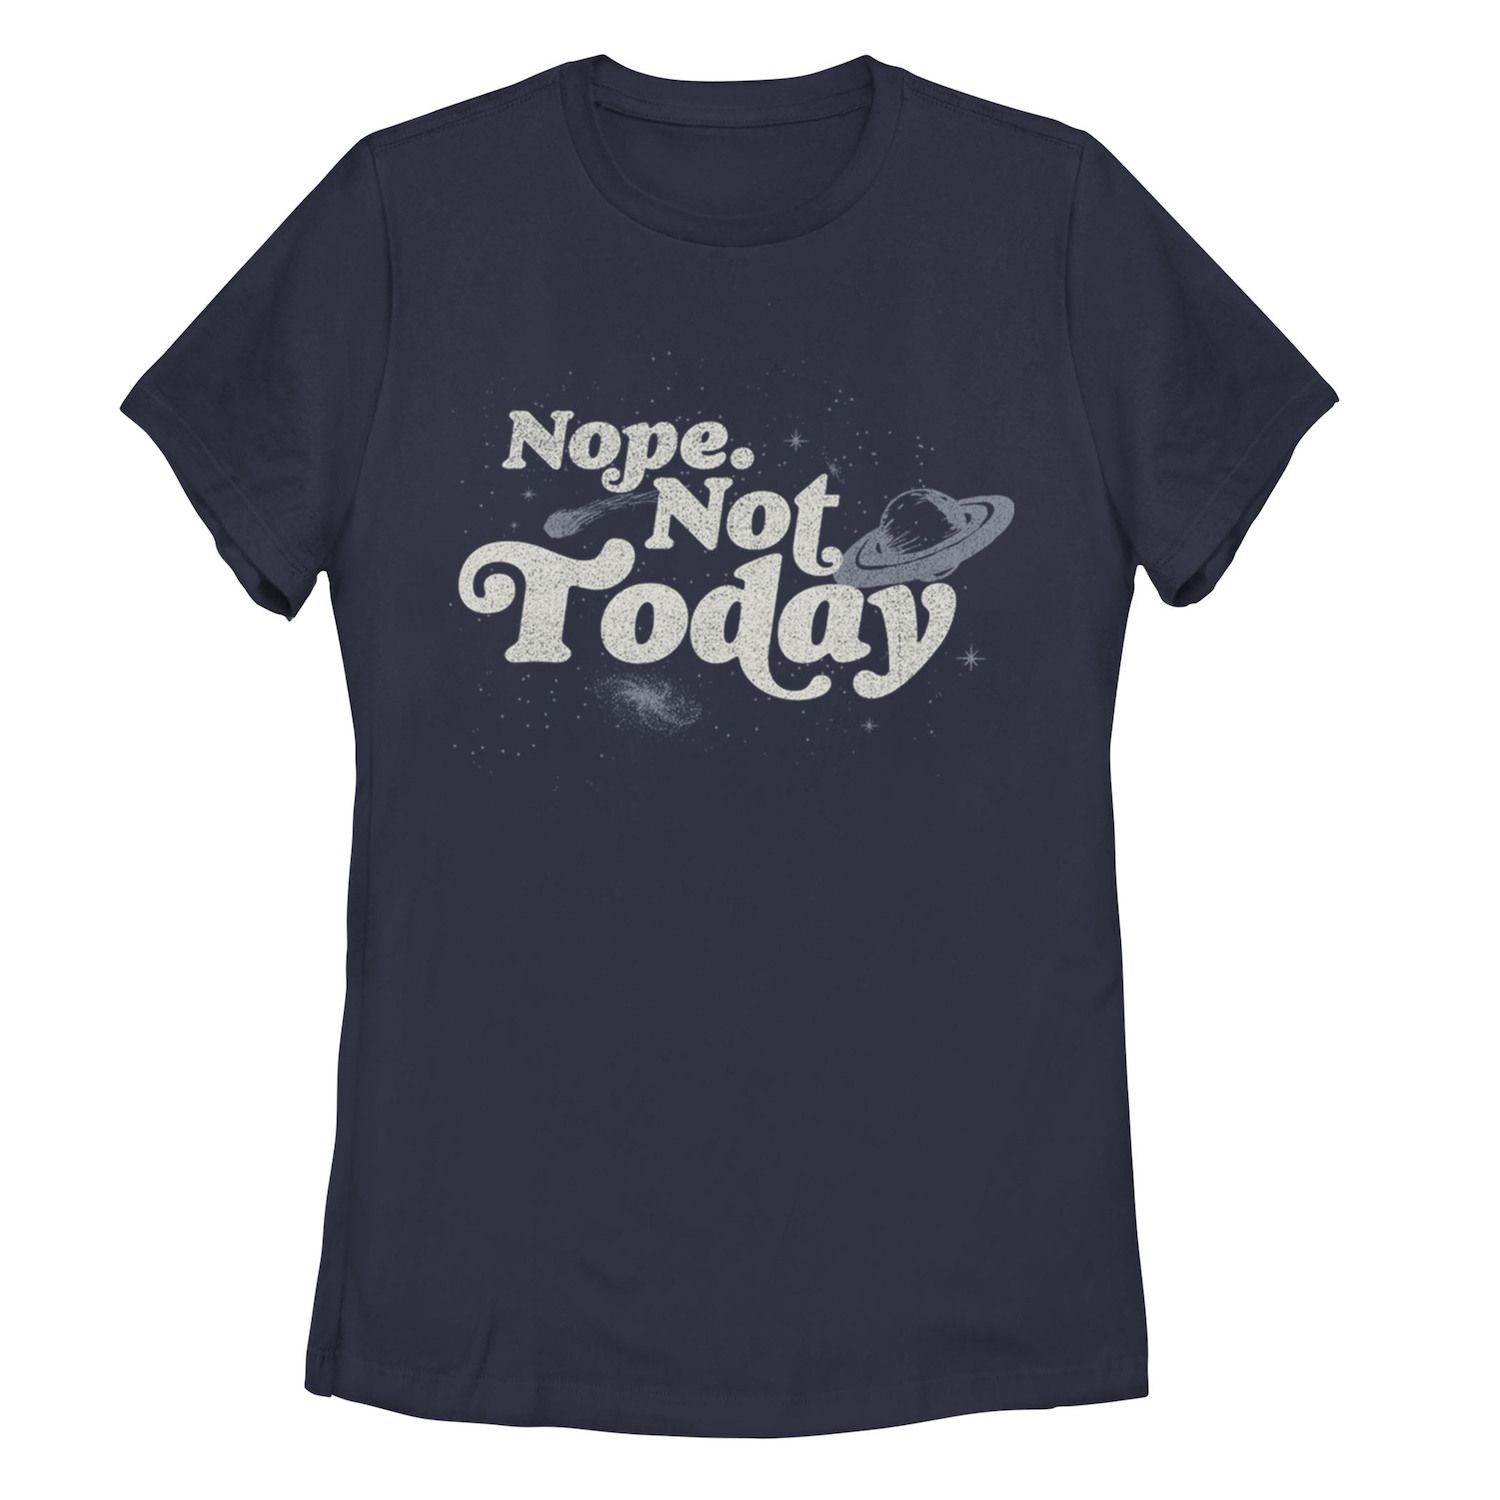 

Детская футболка с космическим рисунком «Нет, не сегодня»